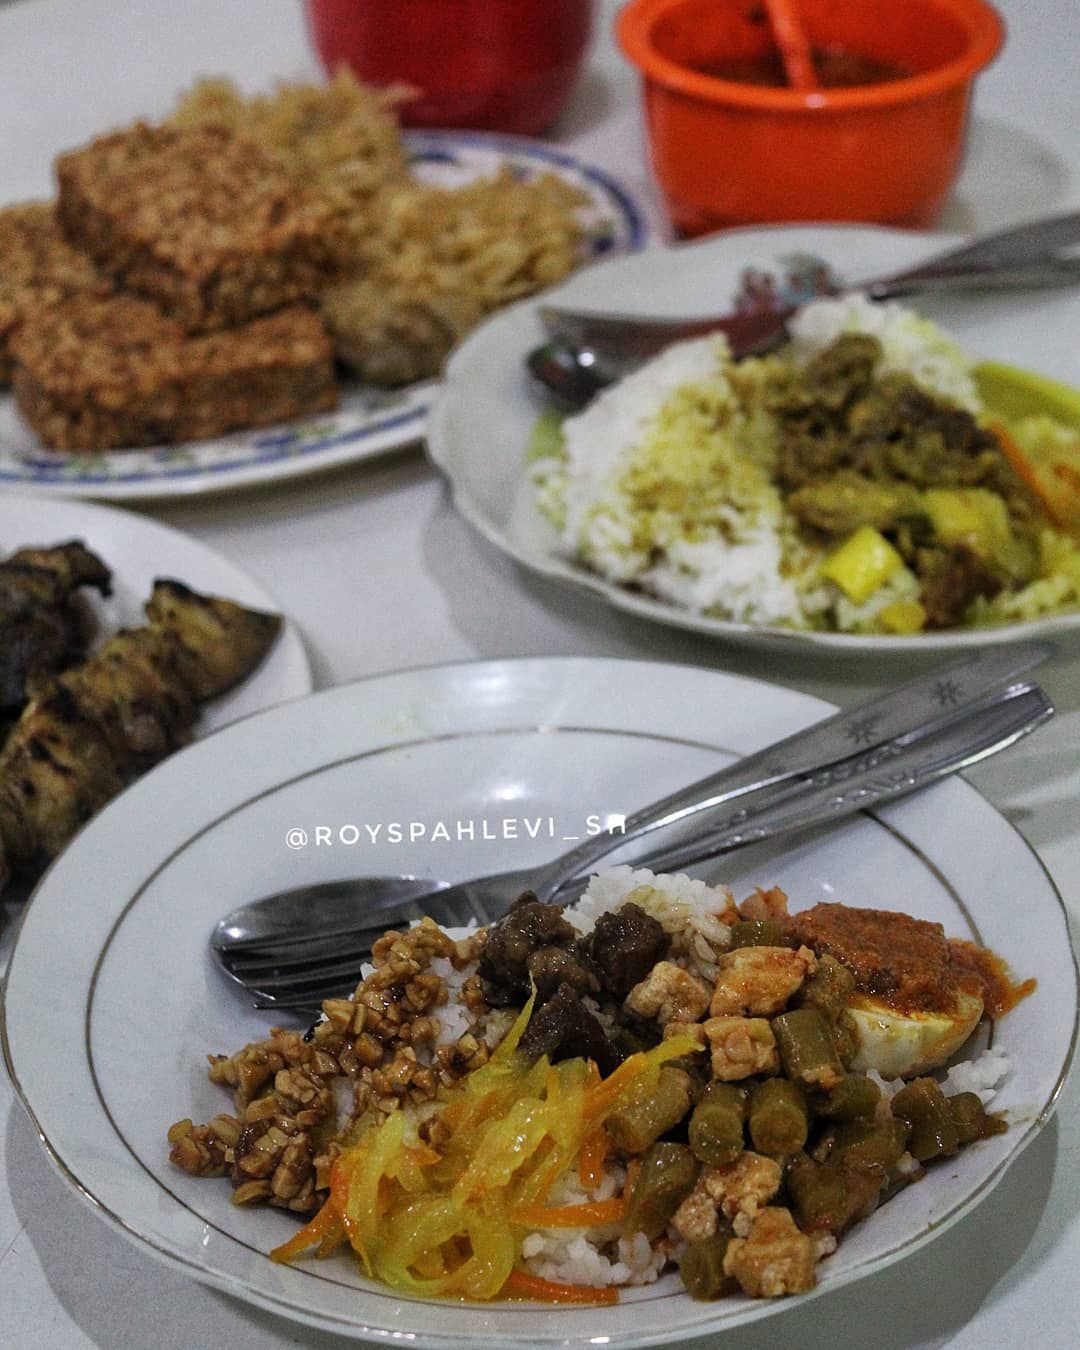 Wisata Kuliner Kota Malang - Warung Lama H. Ridwan